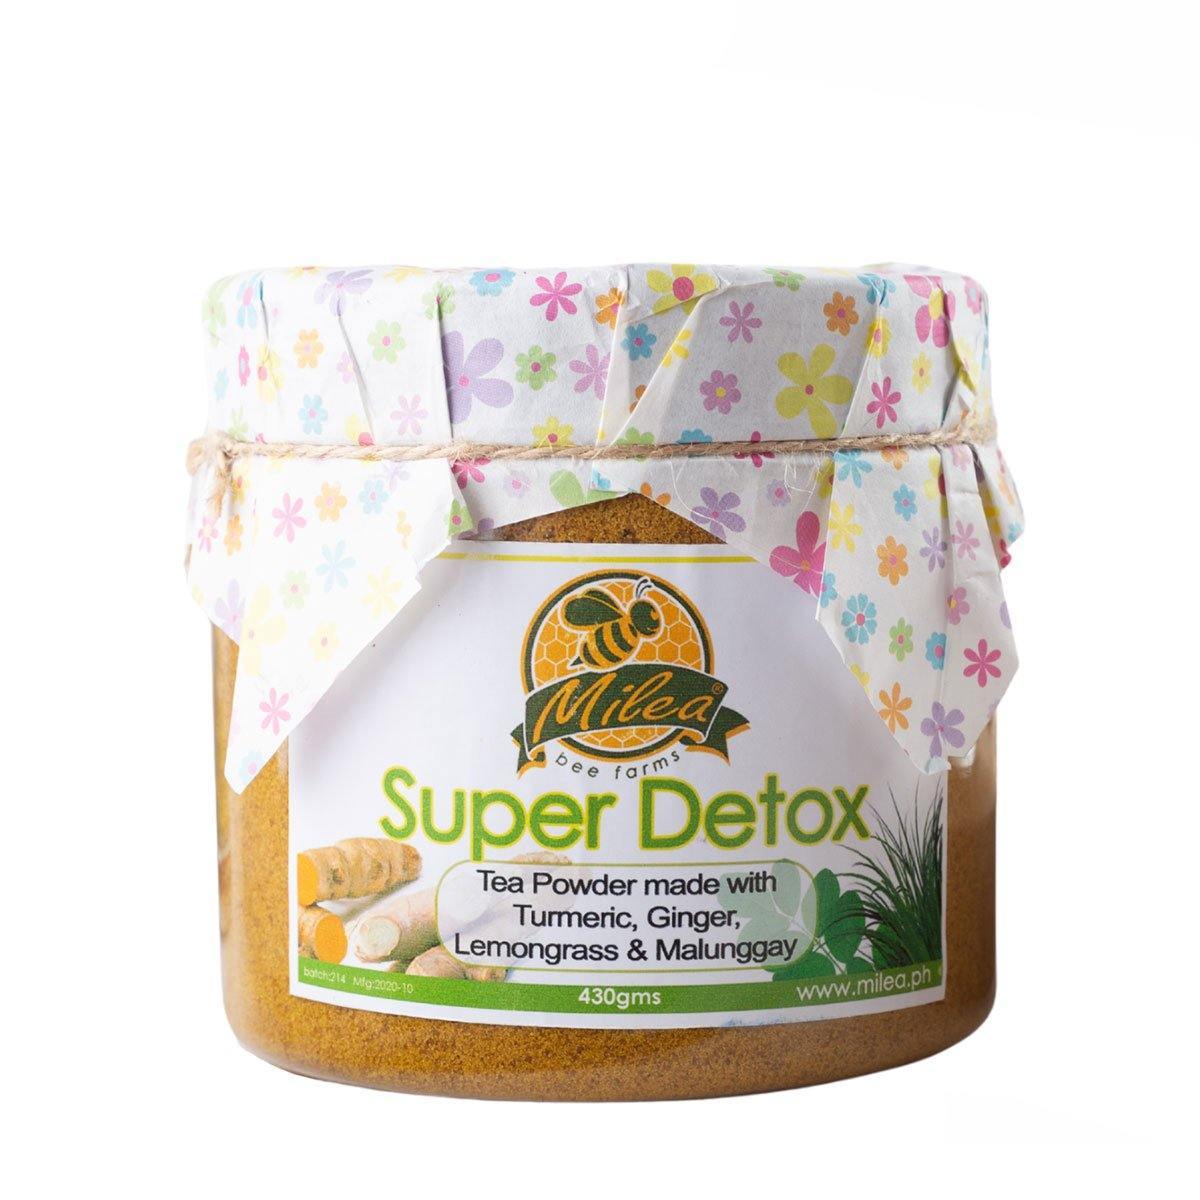 4-in-1 Super Detox Tea - Milea All Organics - Philippines